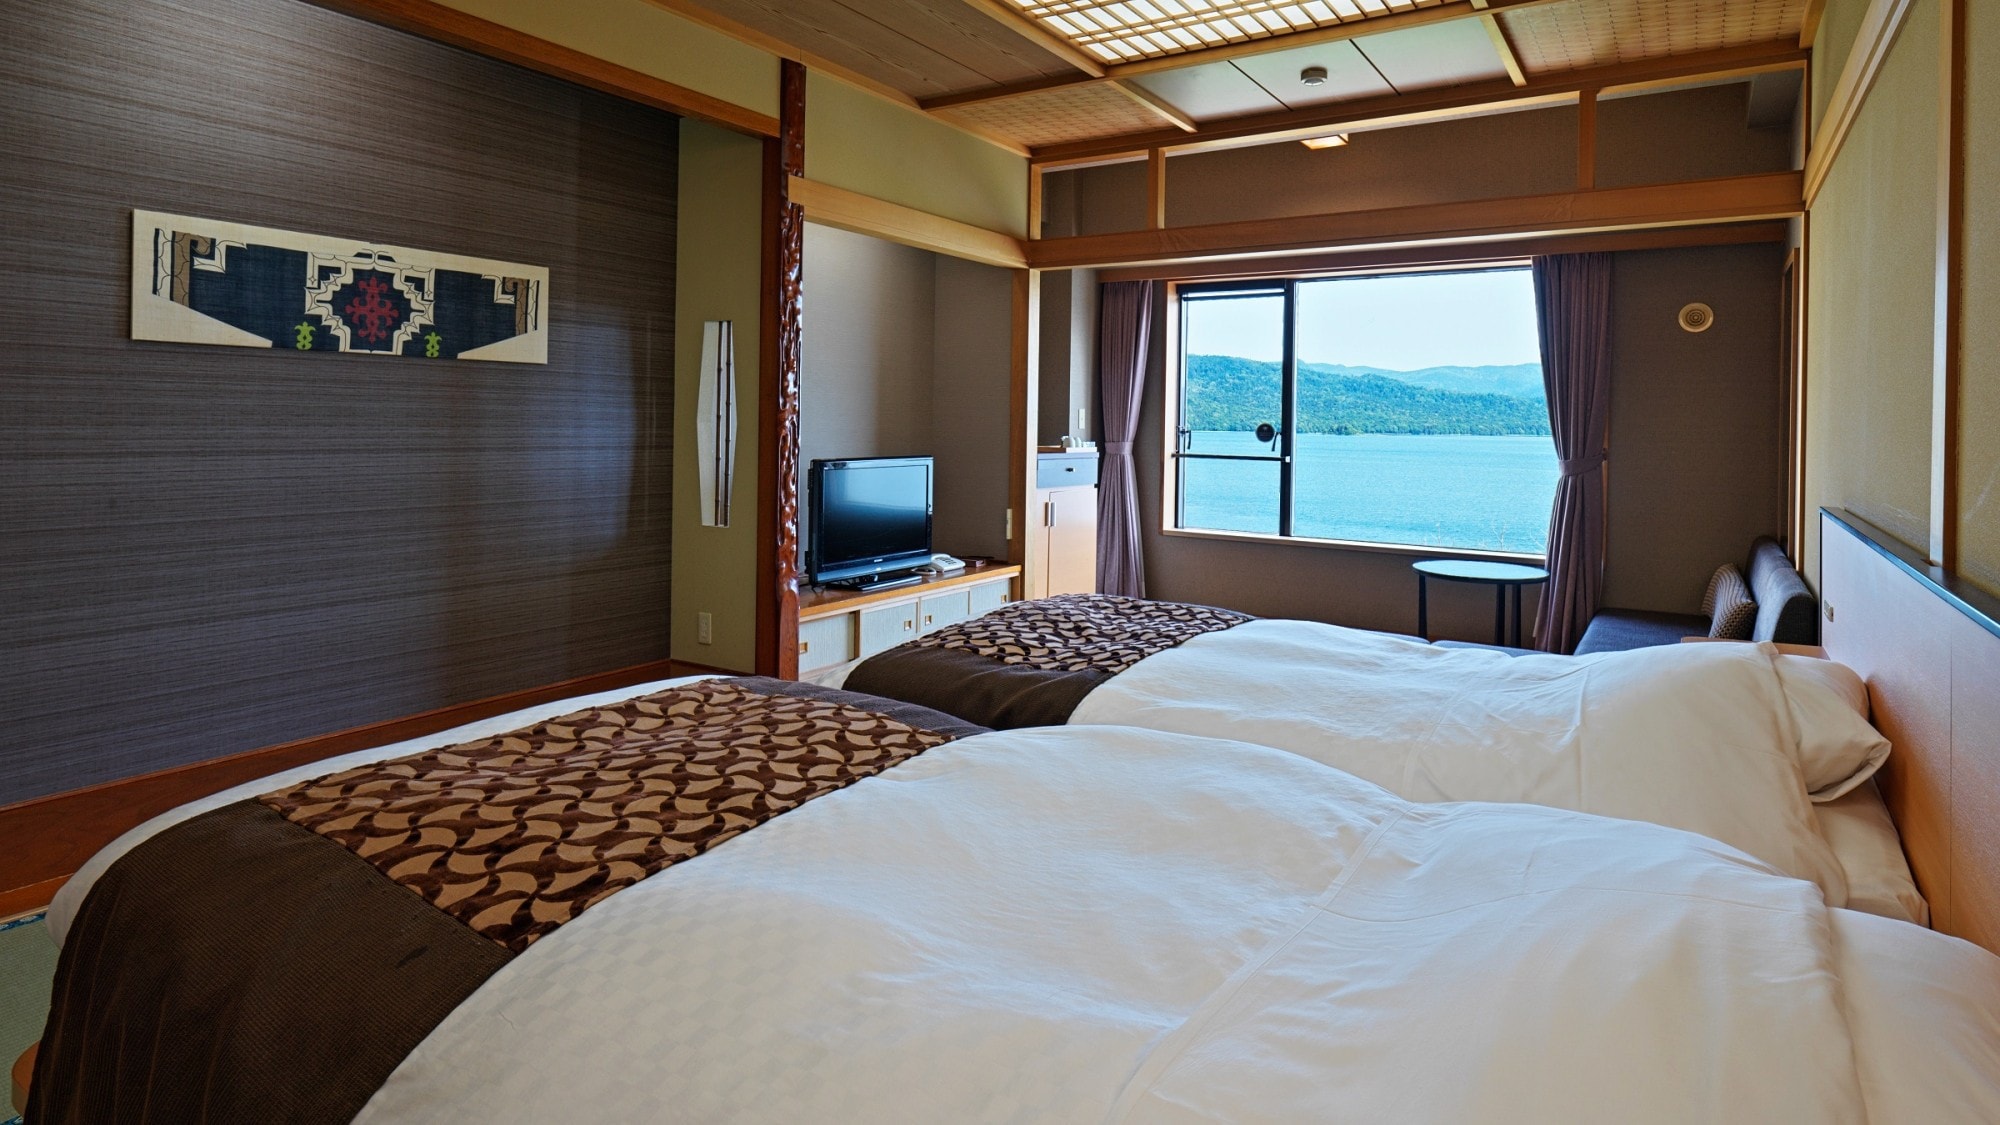 [ริมทะเลสาบ] ห้องเตียงแฝดสไตล์ญี่ปุ่น / ห้องที่ให้ความรู้สึกปลอดโปร่ง มองเห็นทะเลสาบอะคังจากหน้าต่างห้อง